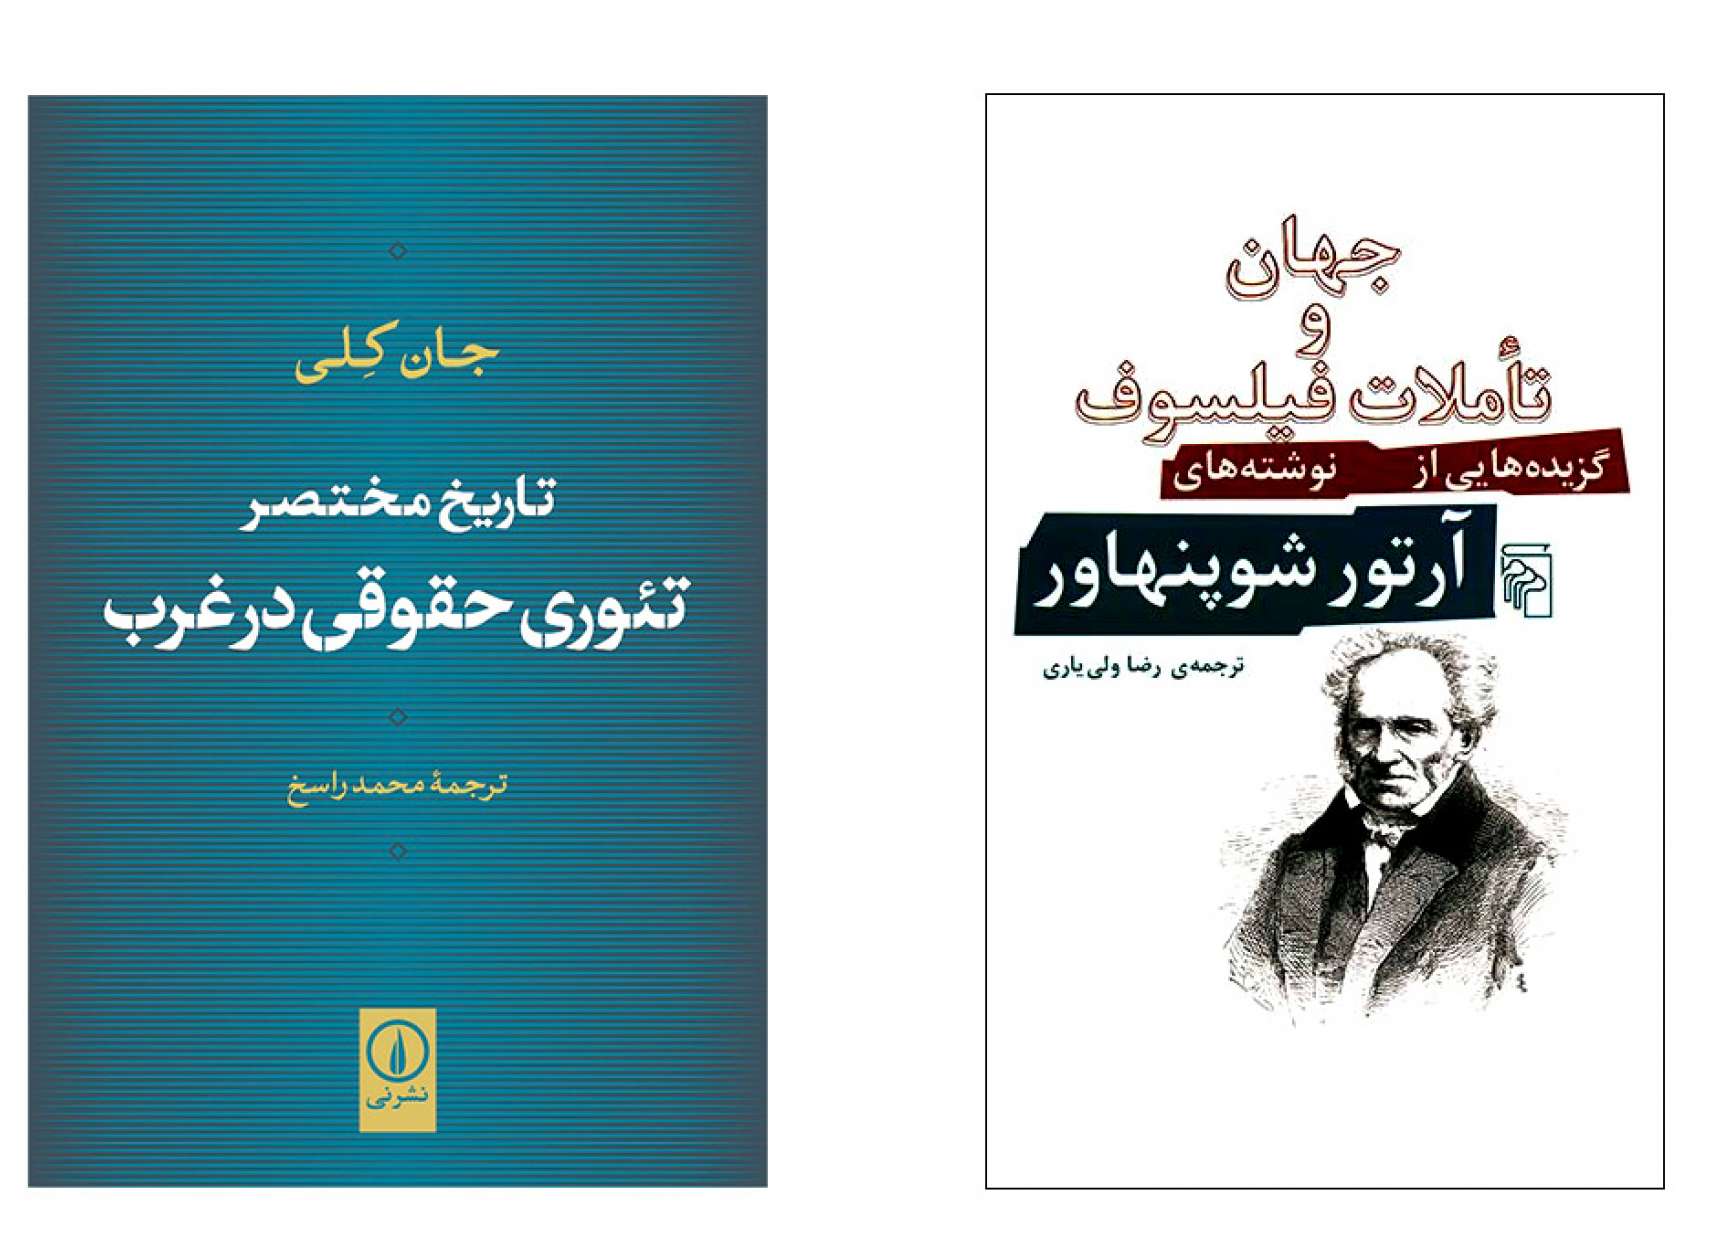 ادبیات-گل‌محمدی-کتاب-در-تابستان-داغ-تهران-جهان-و-تاملات-فیلسوف-تئوری-حقوقی-در-عرب